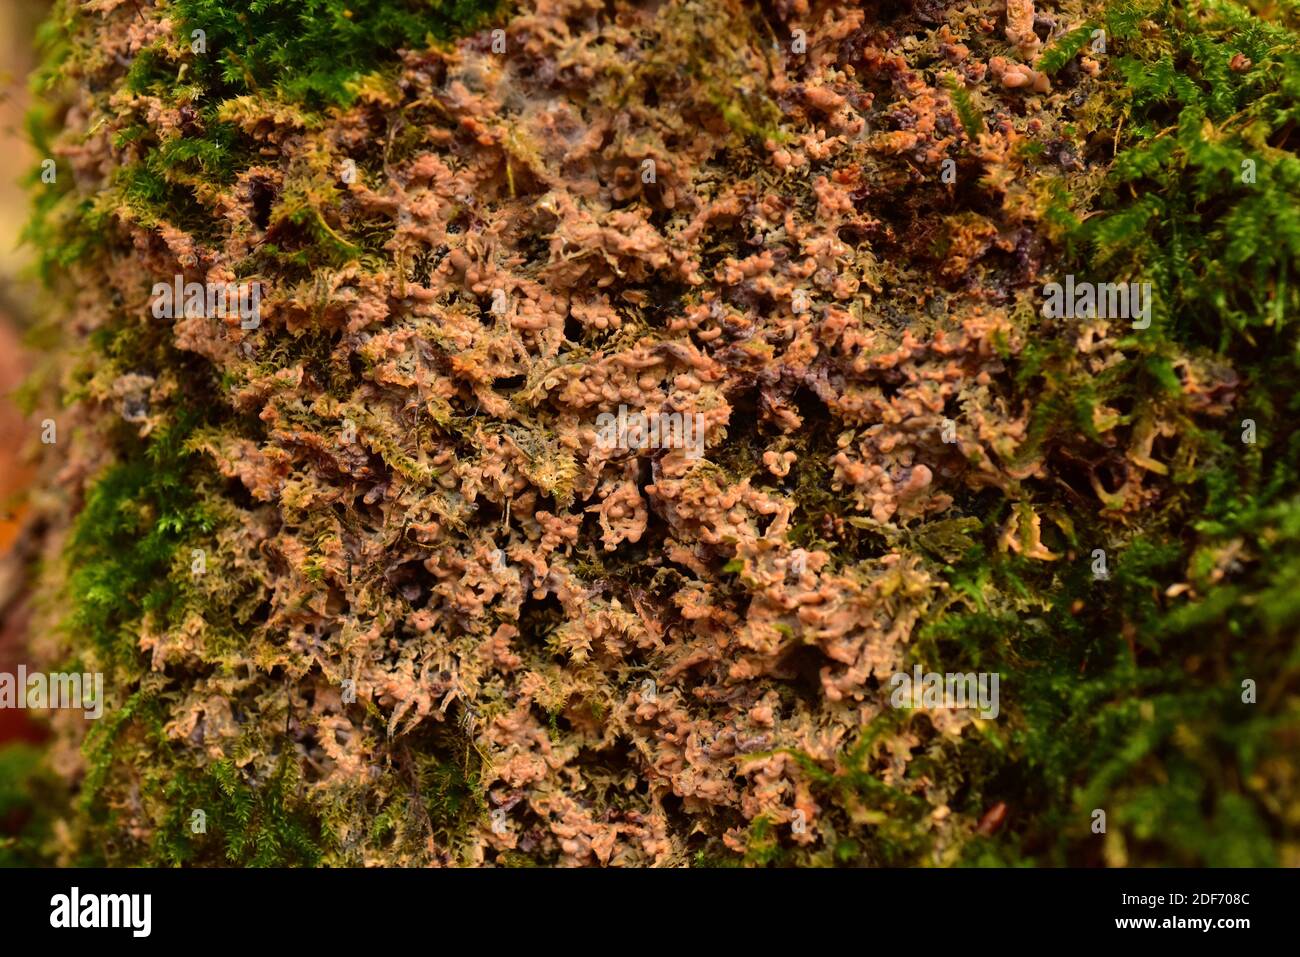 La corteza arrugada (Phlebia radiata) es un hongo de la corteza. Esta foto fue tomada en el Parque Nacional Dalby, Skane, Suecia. Foto de stock